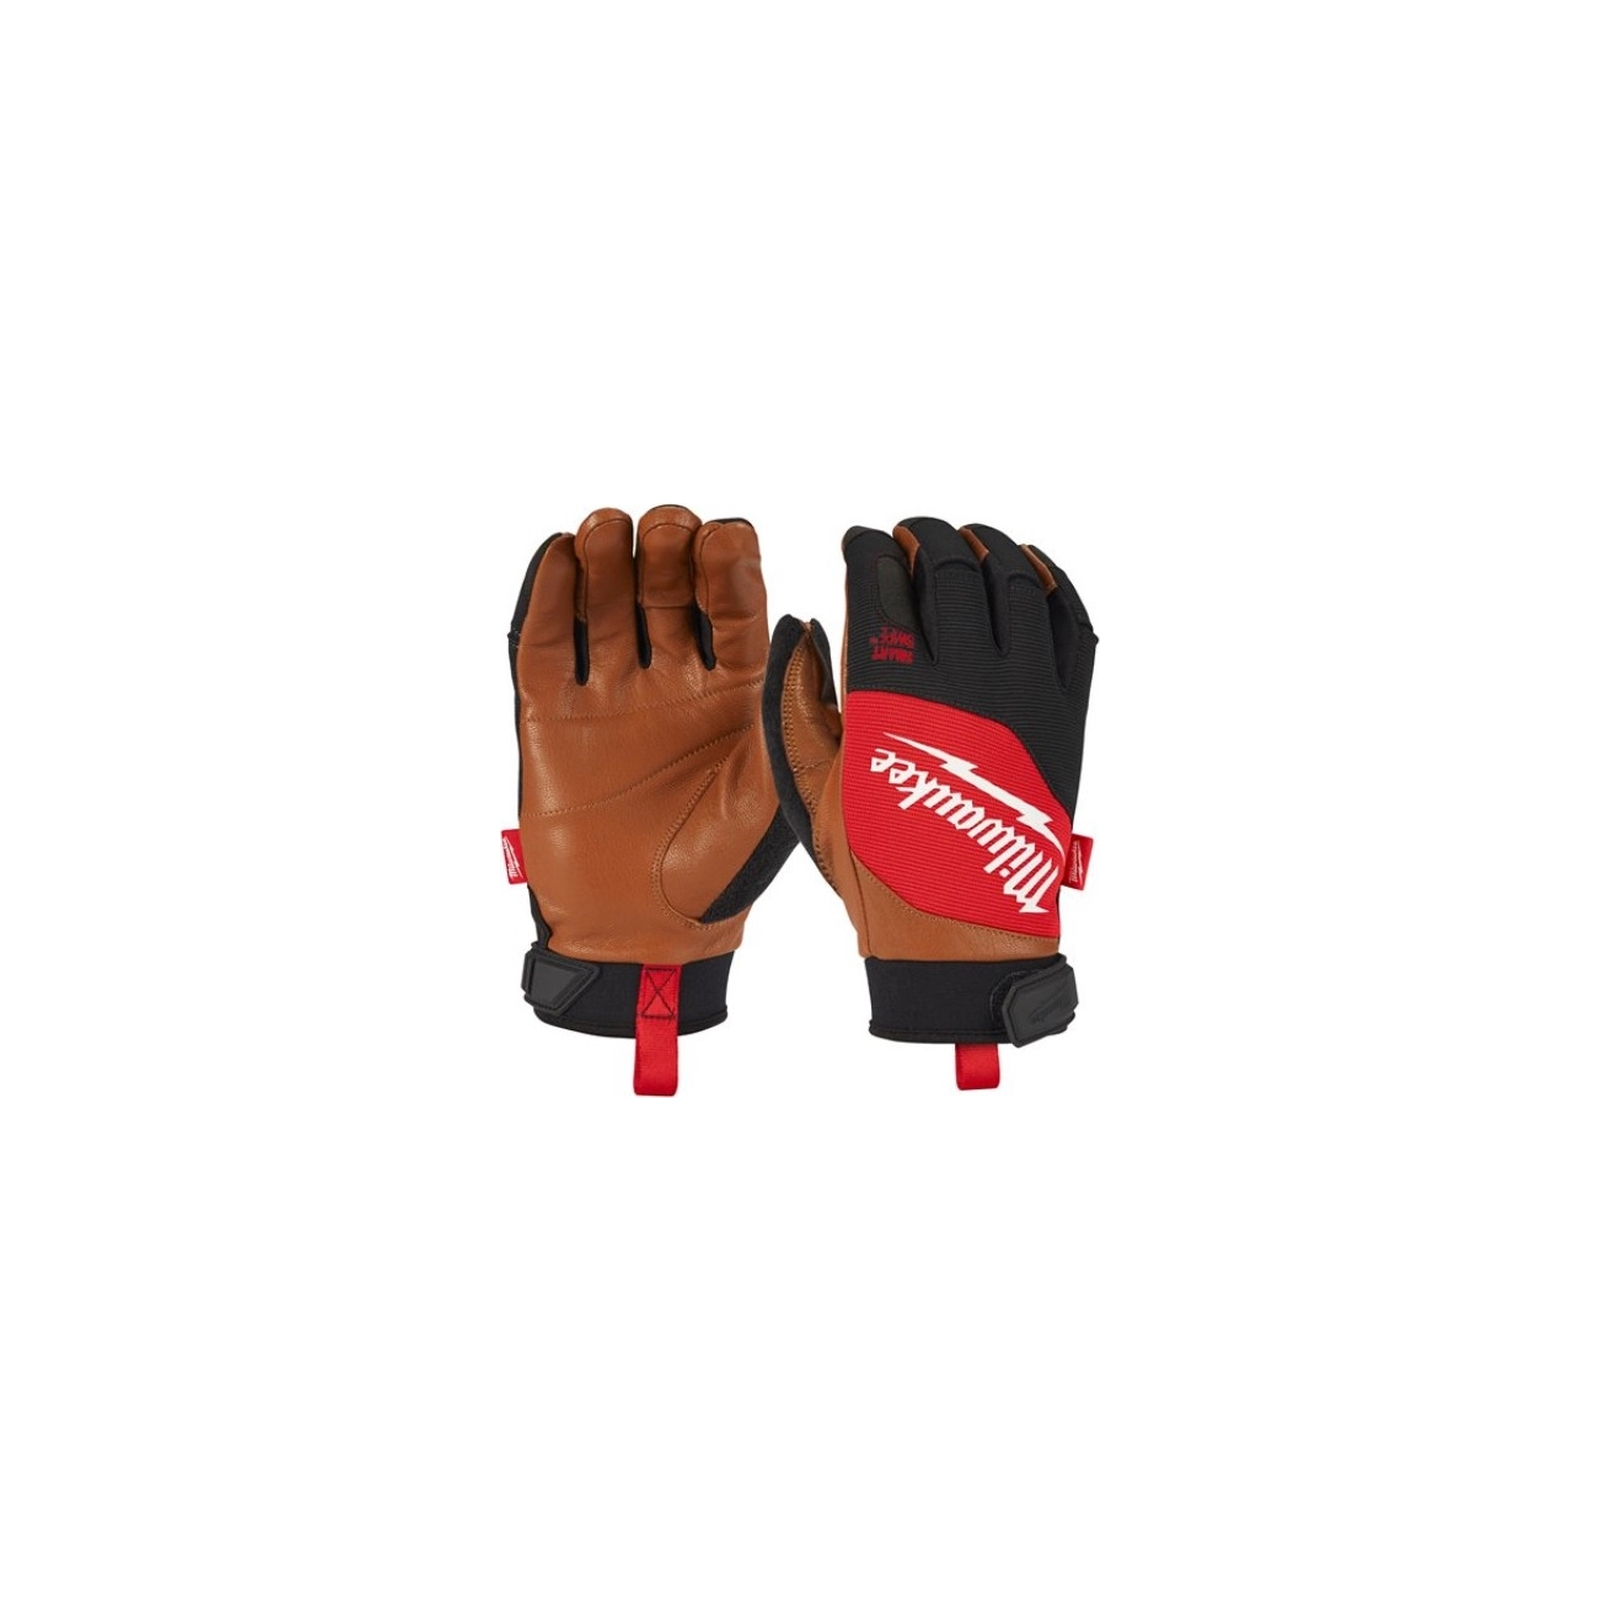 Защитные перчатки Milwaukee с кожаными вставками, 11/XXL (4932471915)